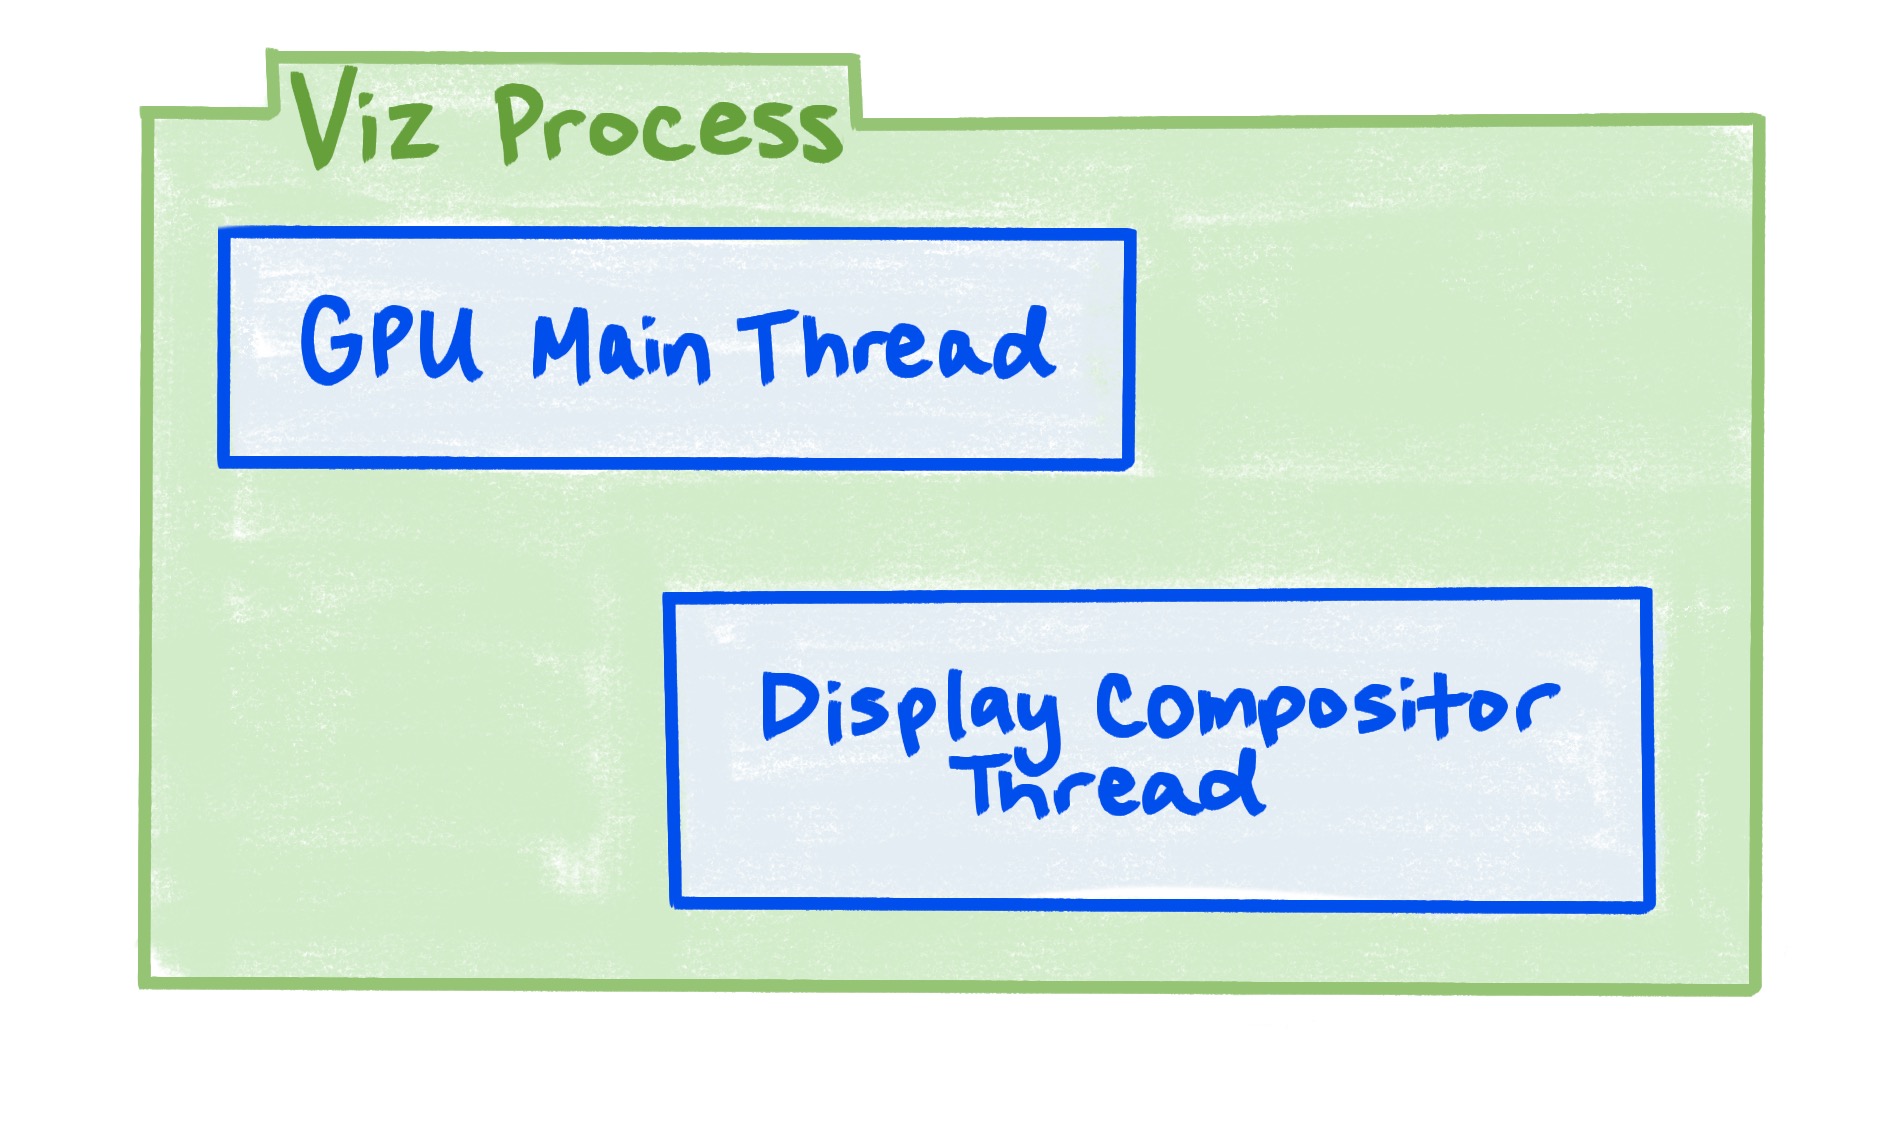 Um diagrama que mostra que o processo do Viz inclui a linha de execução principal da GPU e a linha de execução do compositor de exibição.